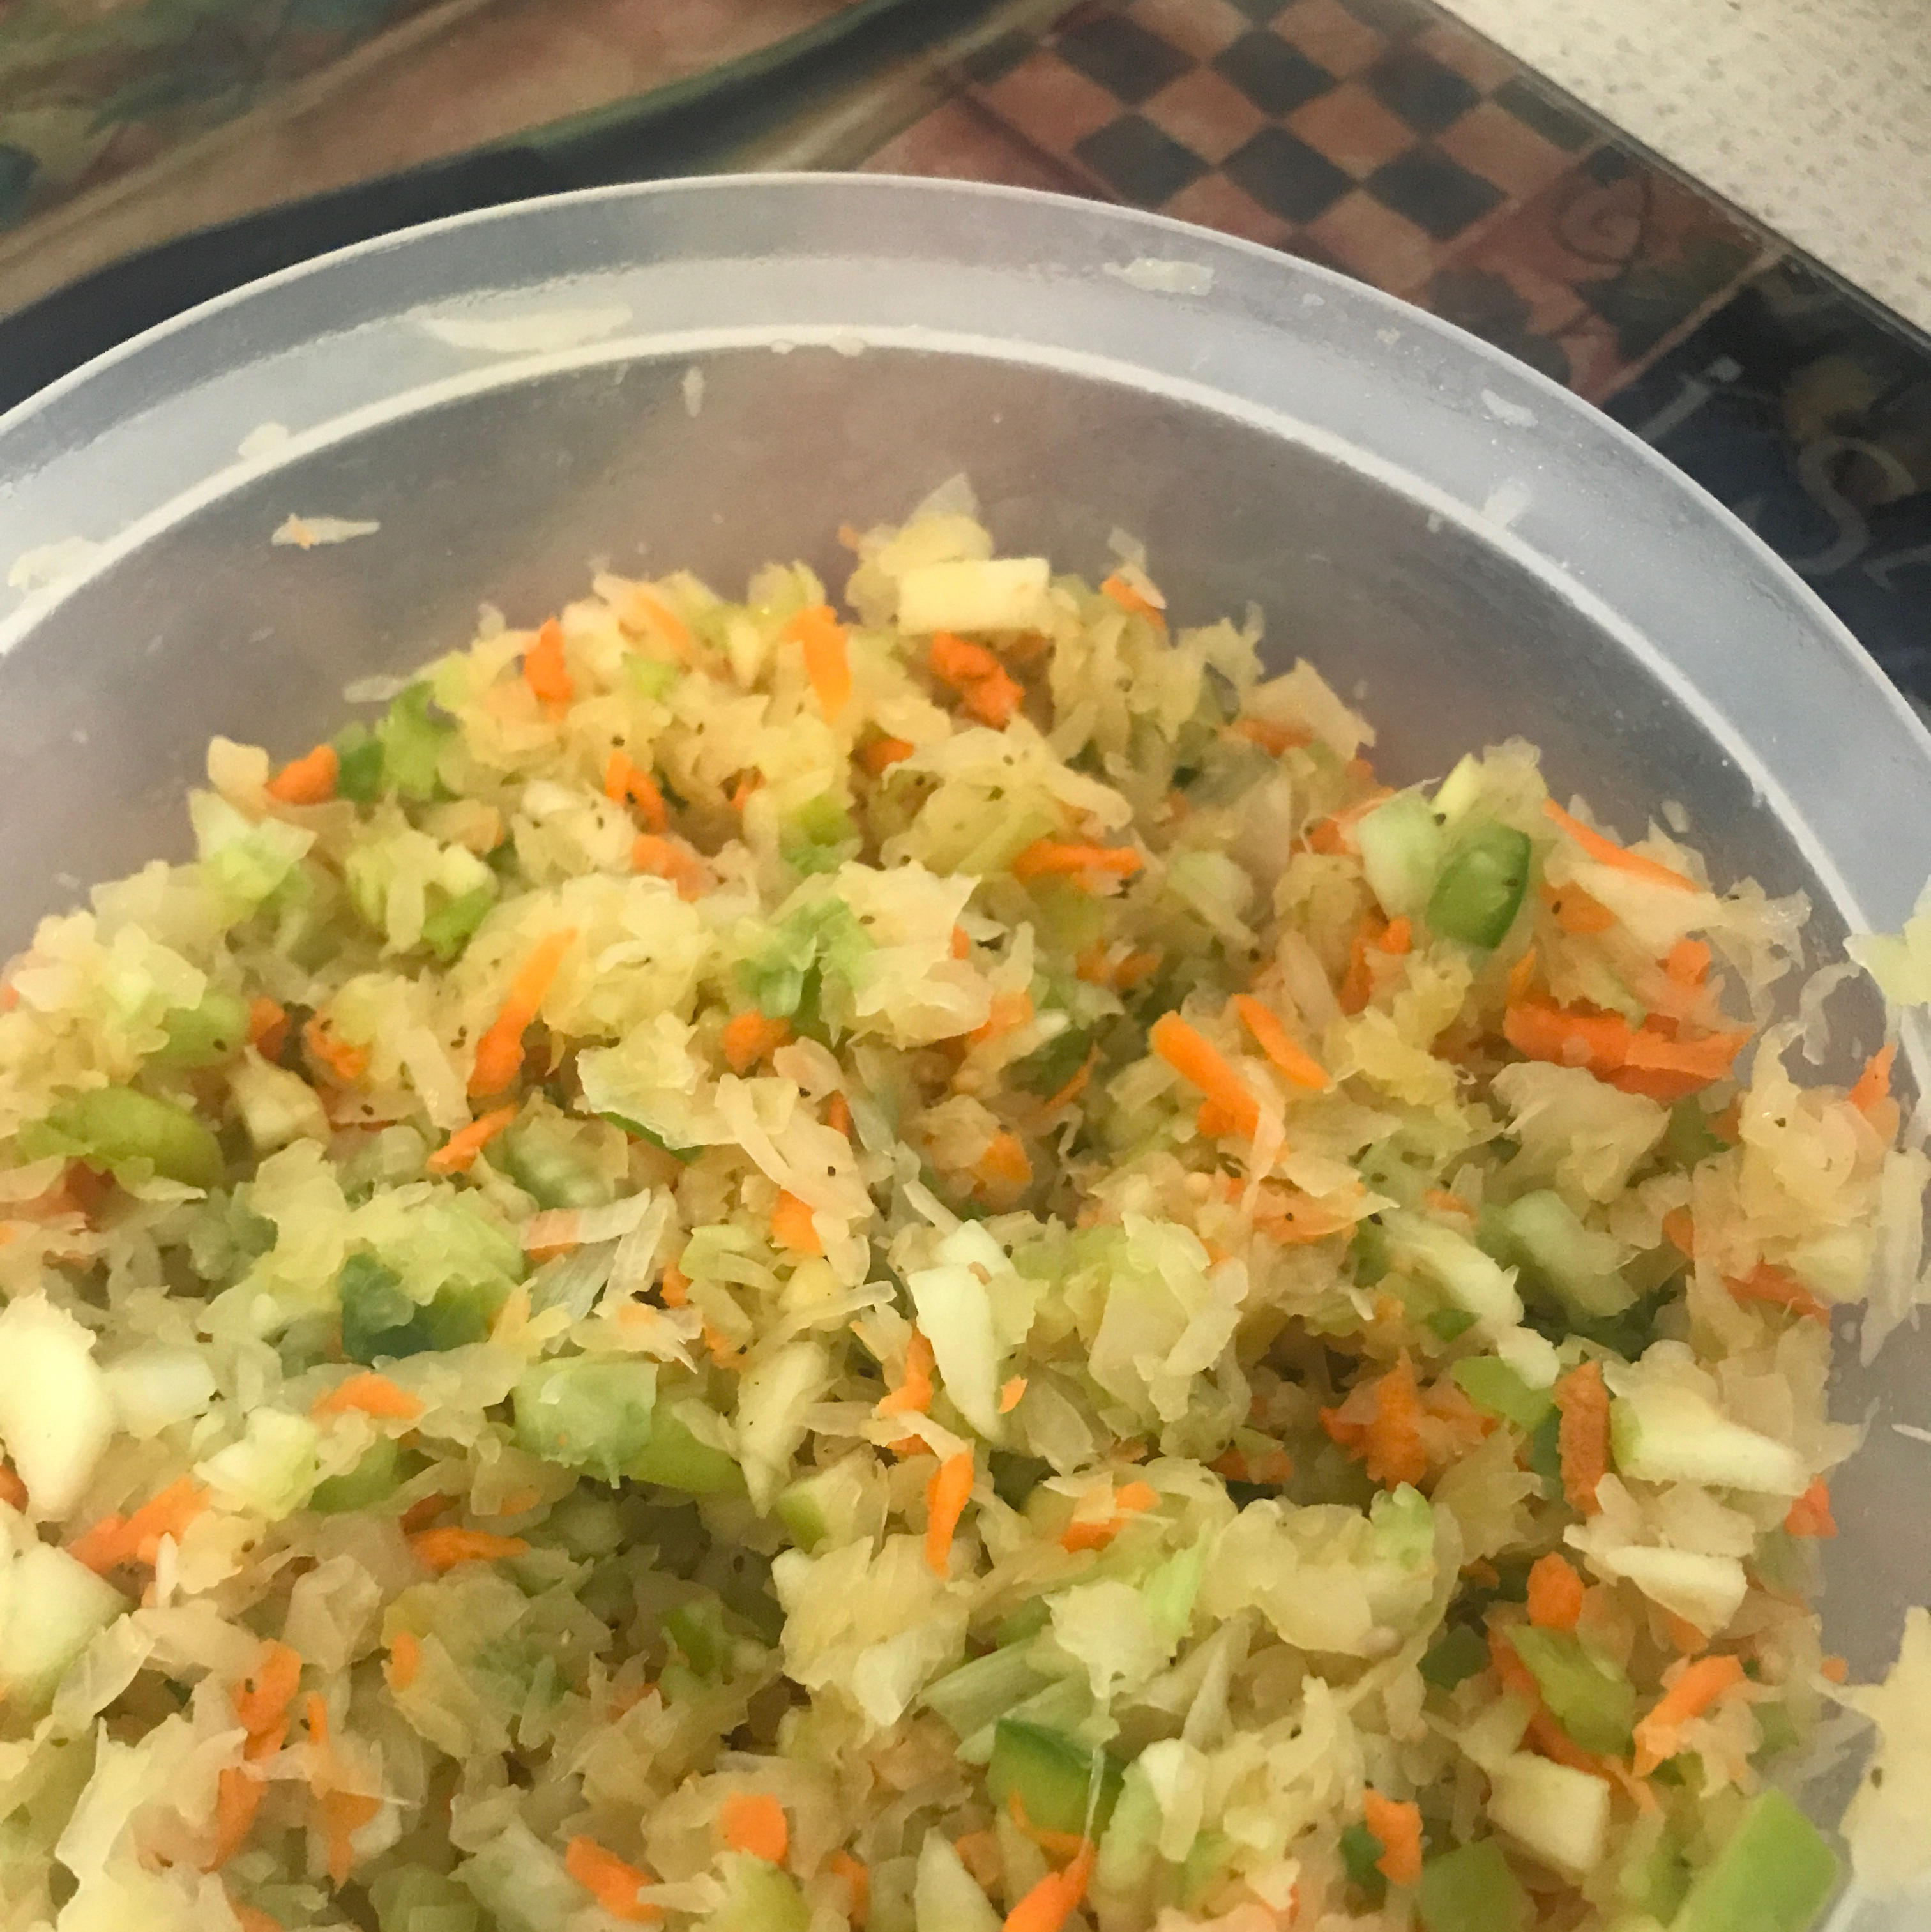 Polish Sauerkraut and Carrot Salad